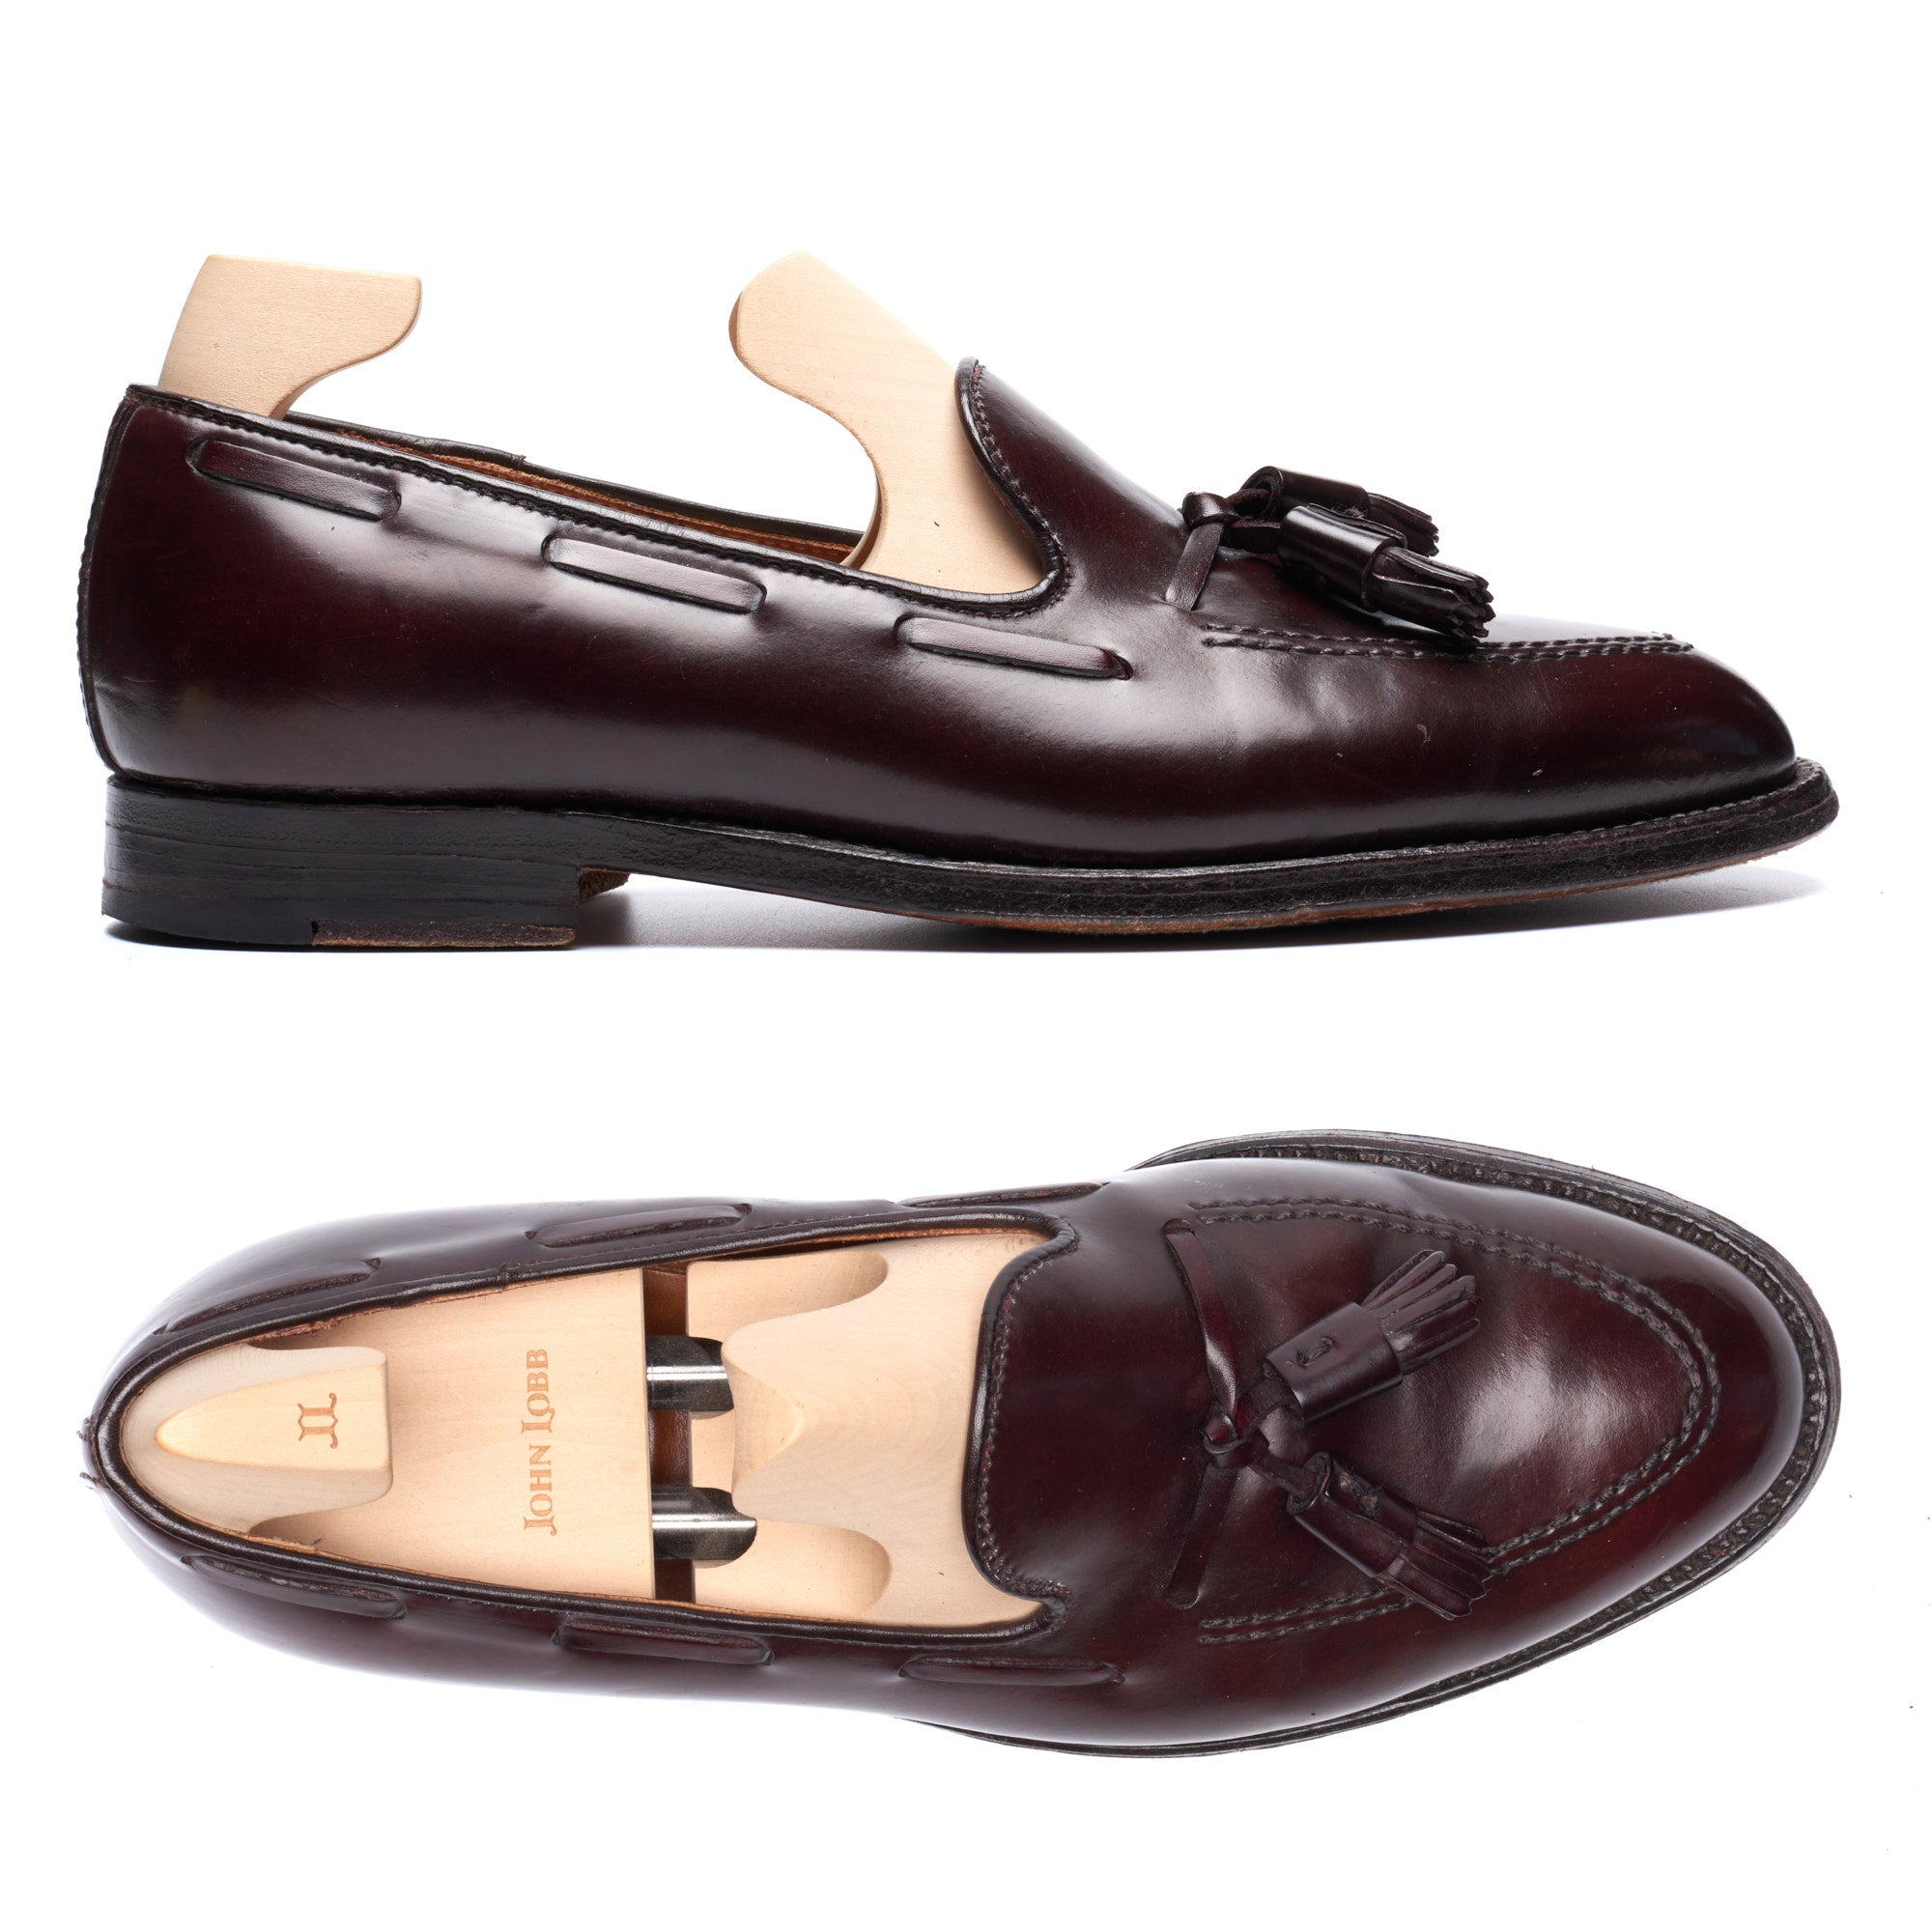 ALDEN 563 Burgundy #8 Horween Shell Cordovan Tassel Loafer Shoes US 8.5 B/D ALDEN